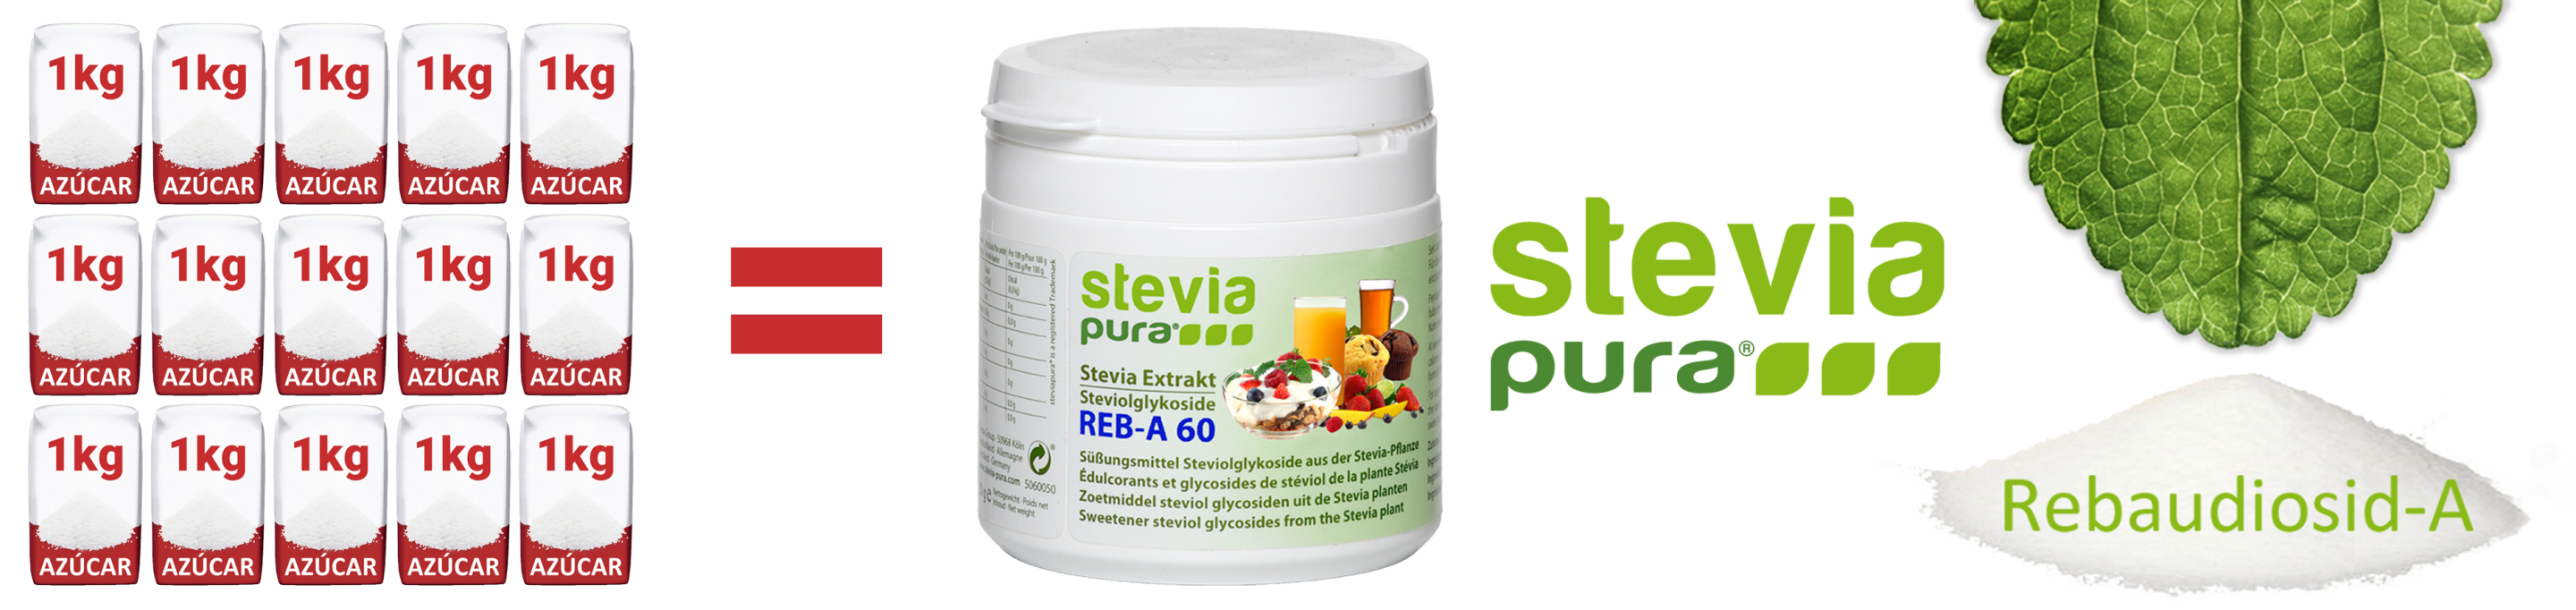 Stevia pura en polvo Rebaudioside-A 60% Extracto puro de...